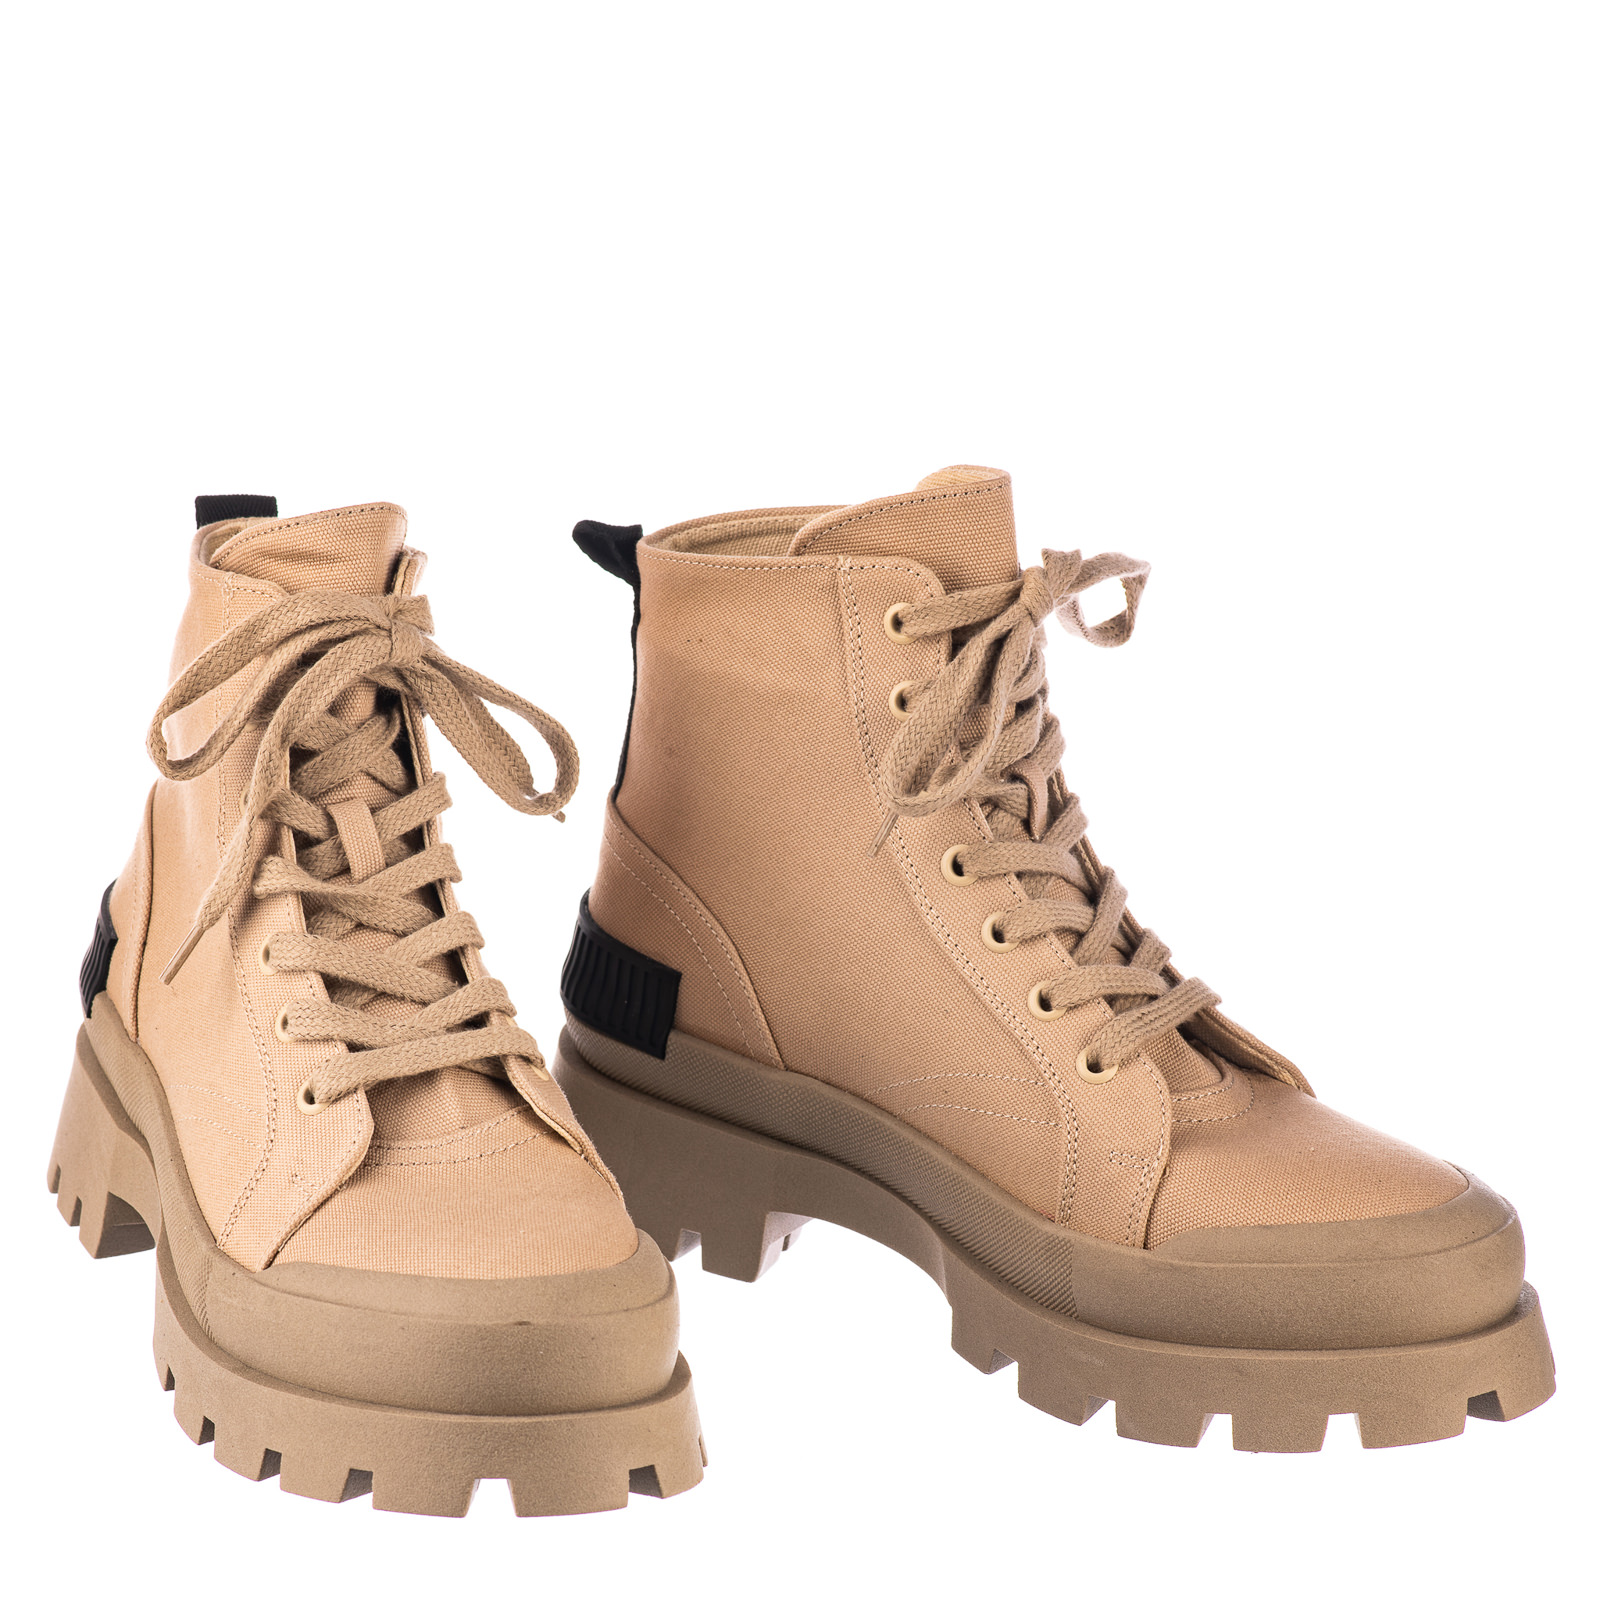 Women ankle boots B706 - BEIGE